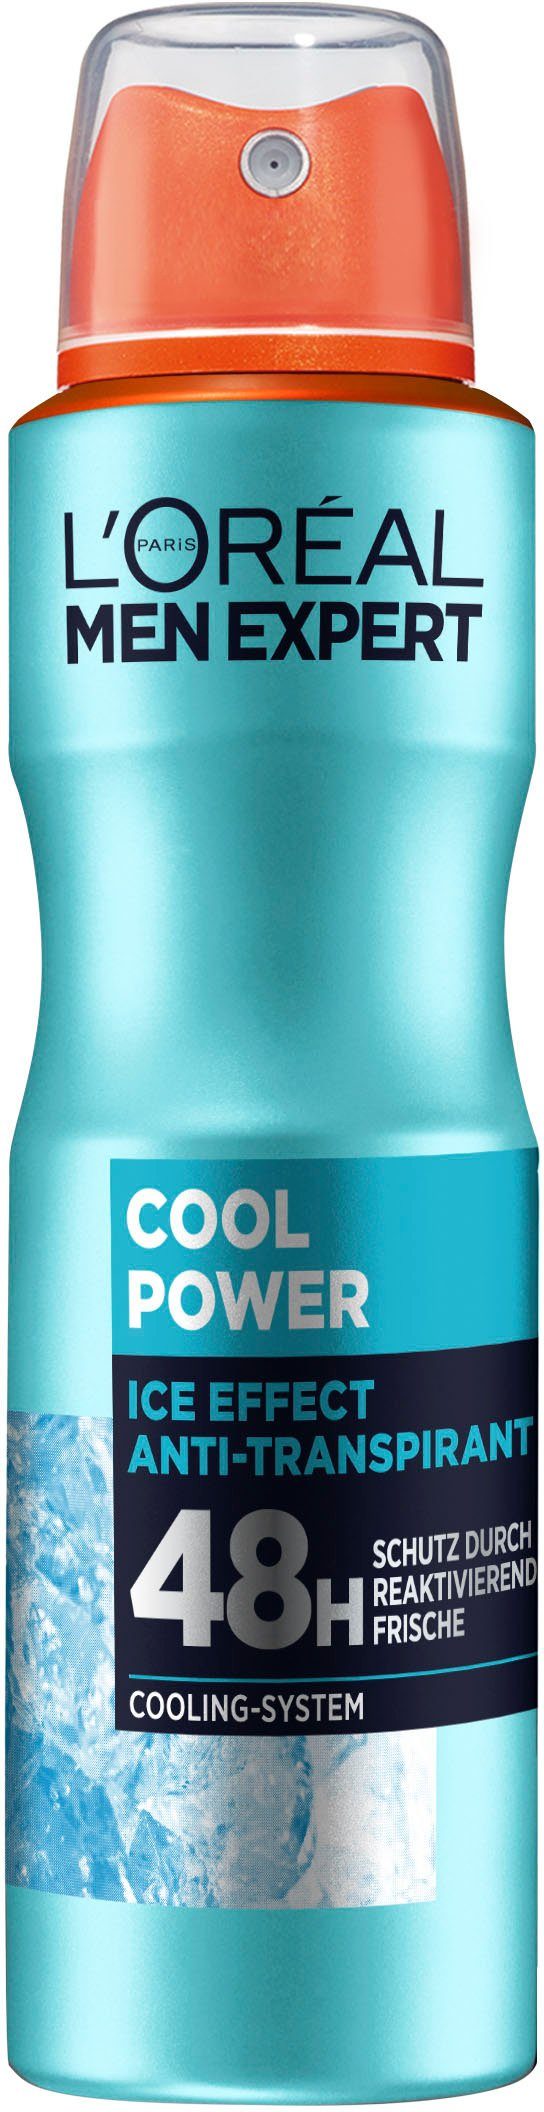 Cool Power, L'ORÉAL EXPERT PARIS mit MEN 48H Cooling-Effekt Deo-Spray